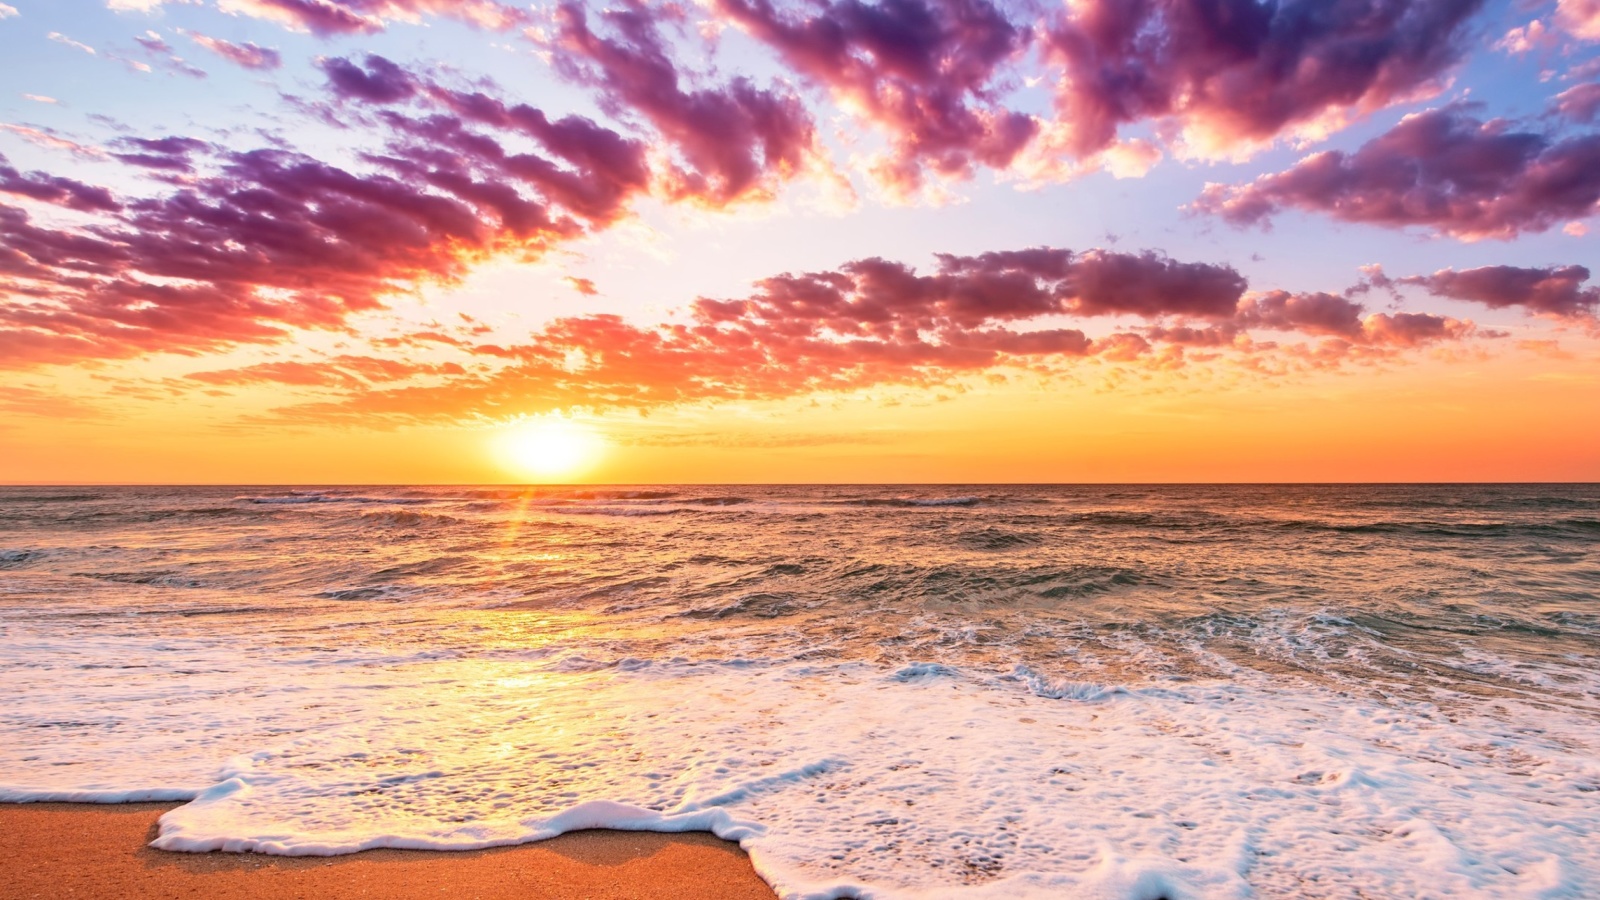 Unbelievable sunset screenshot #1 1600x900